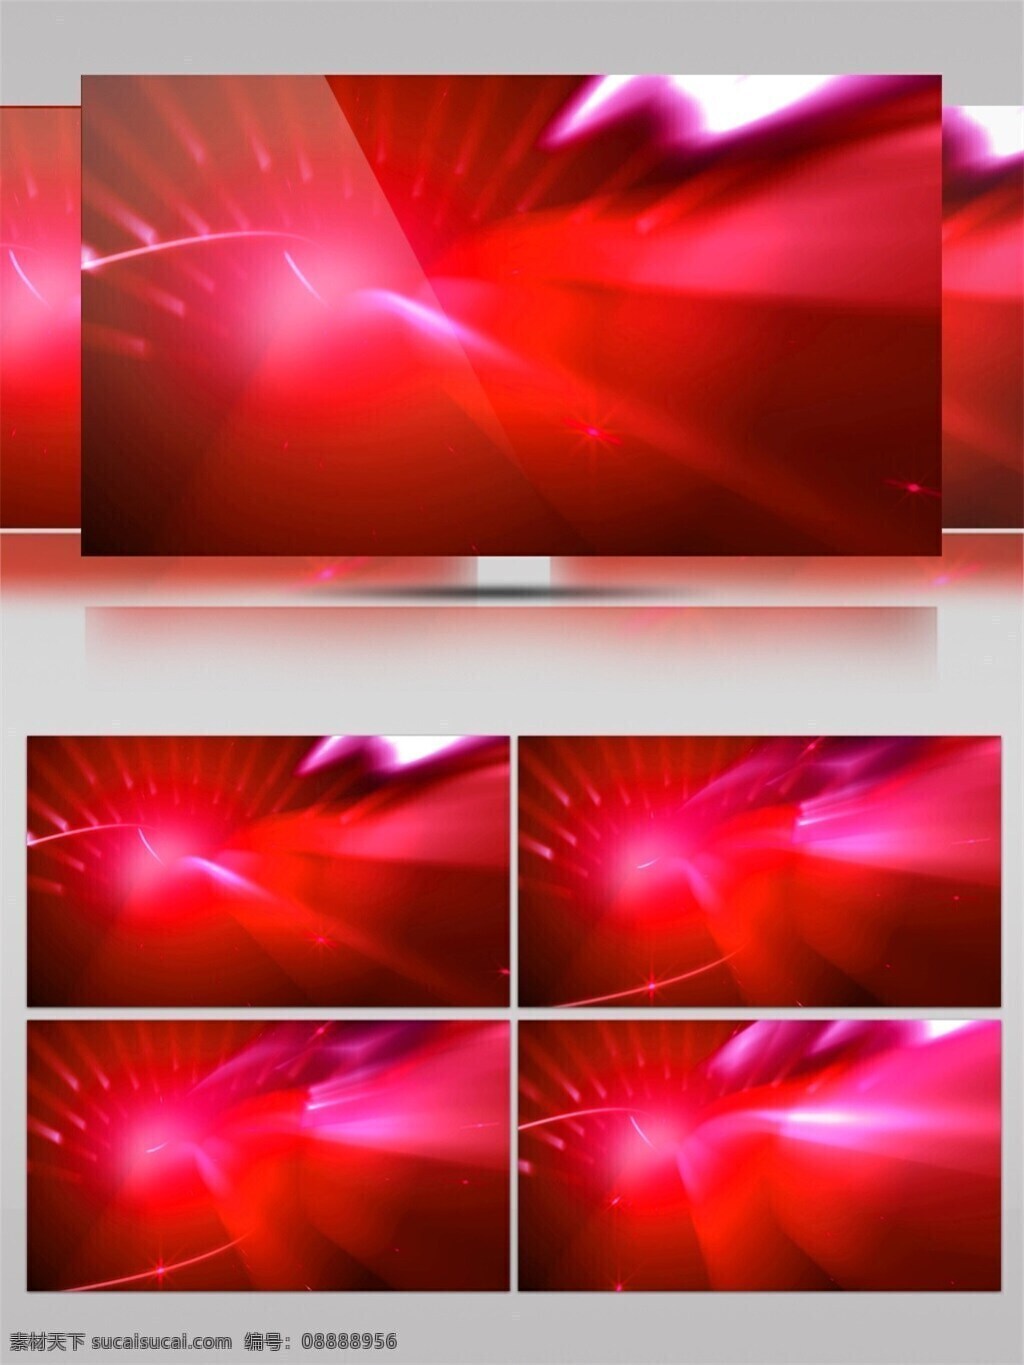 红色 迷幻 光 高清 视频 高质量 背景 好看背景素材 红色光团 炫酷大气